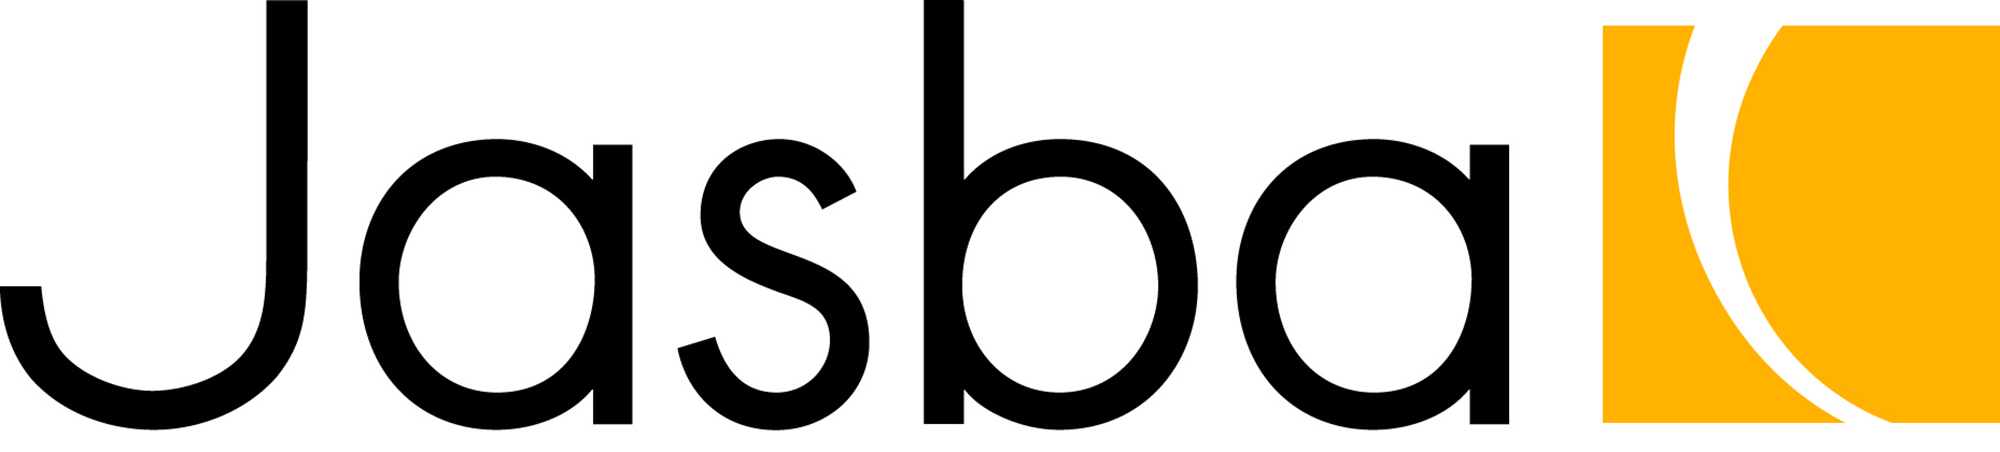 jasba-logo.jpg